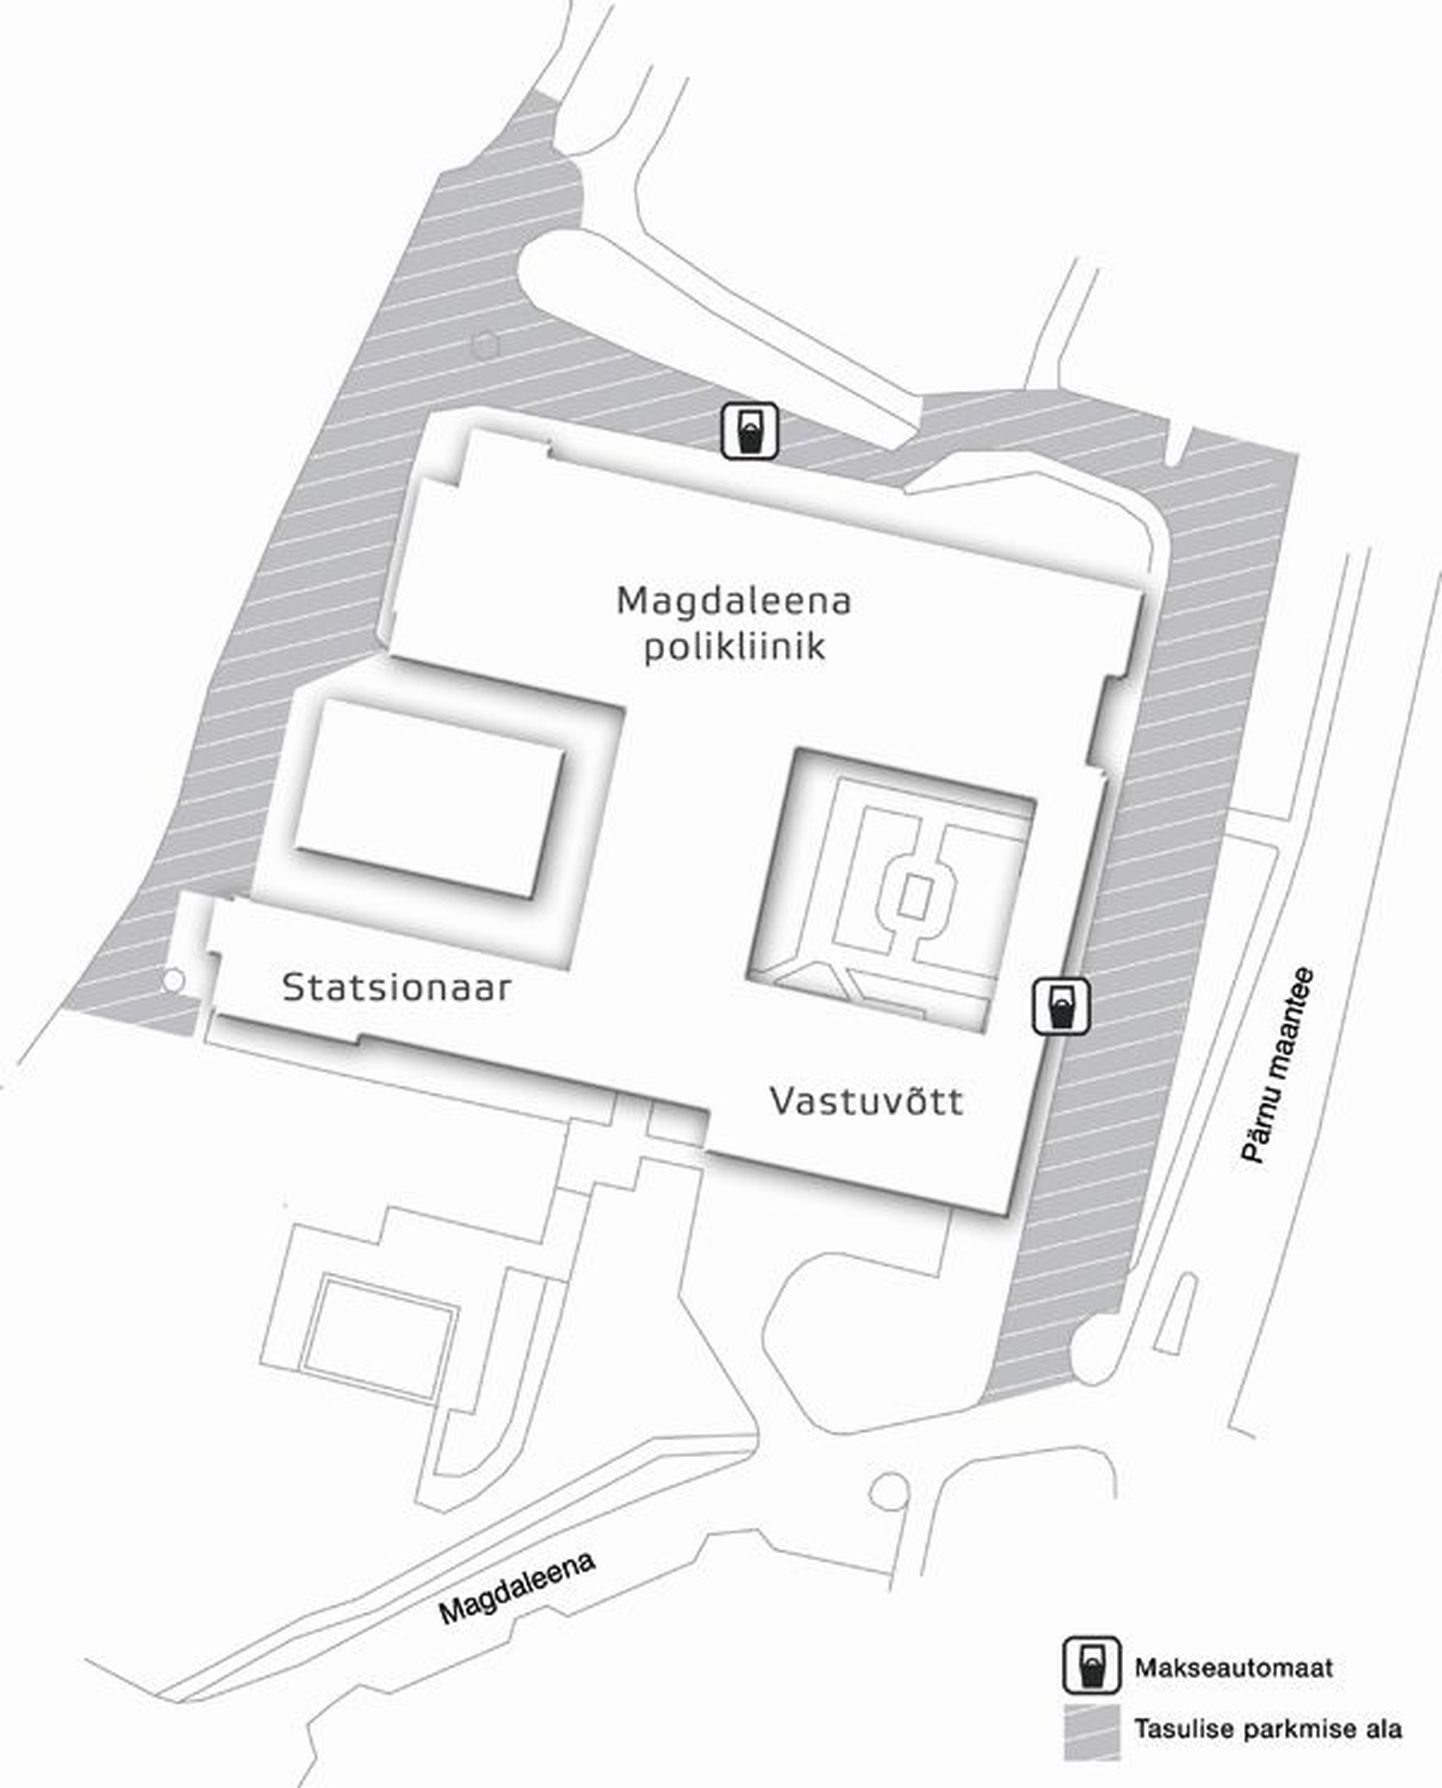 Külastajatel ja patsientidel on võimalik oma auto parkida Magdaleena polikliiniku ja haigla territooriumil kaardil näidatud alale.